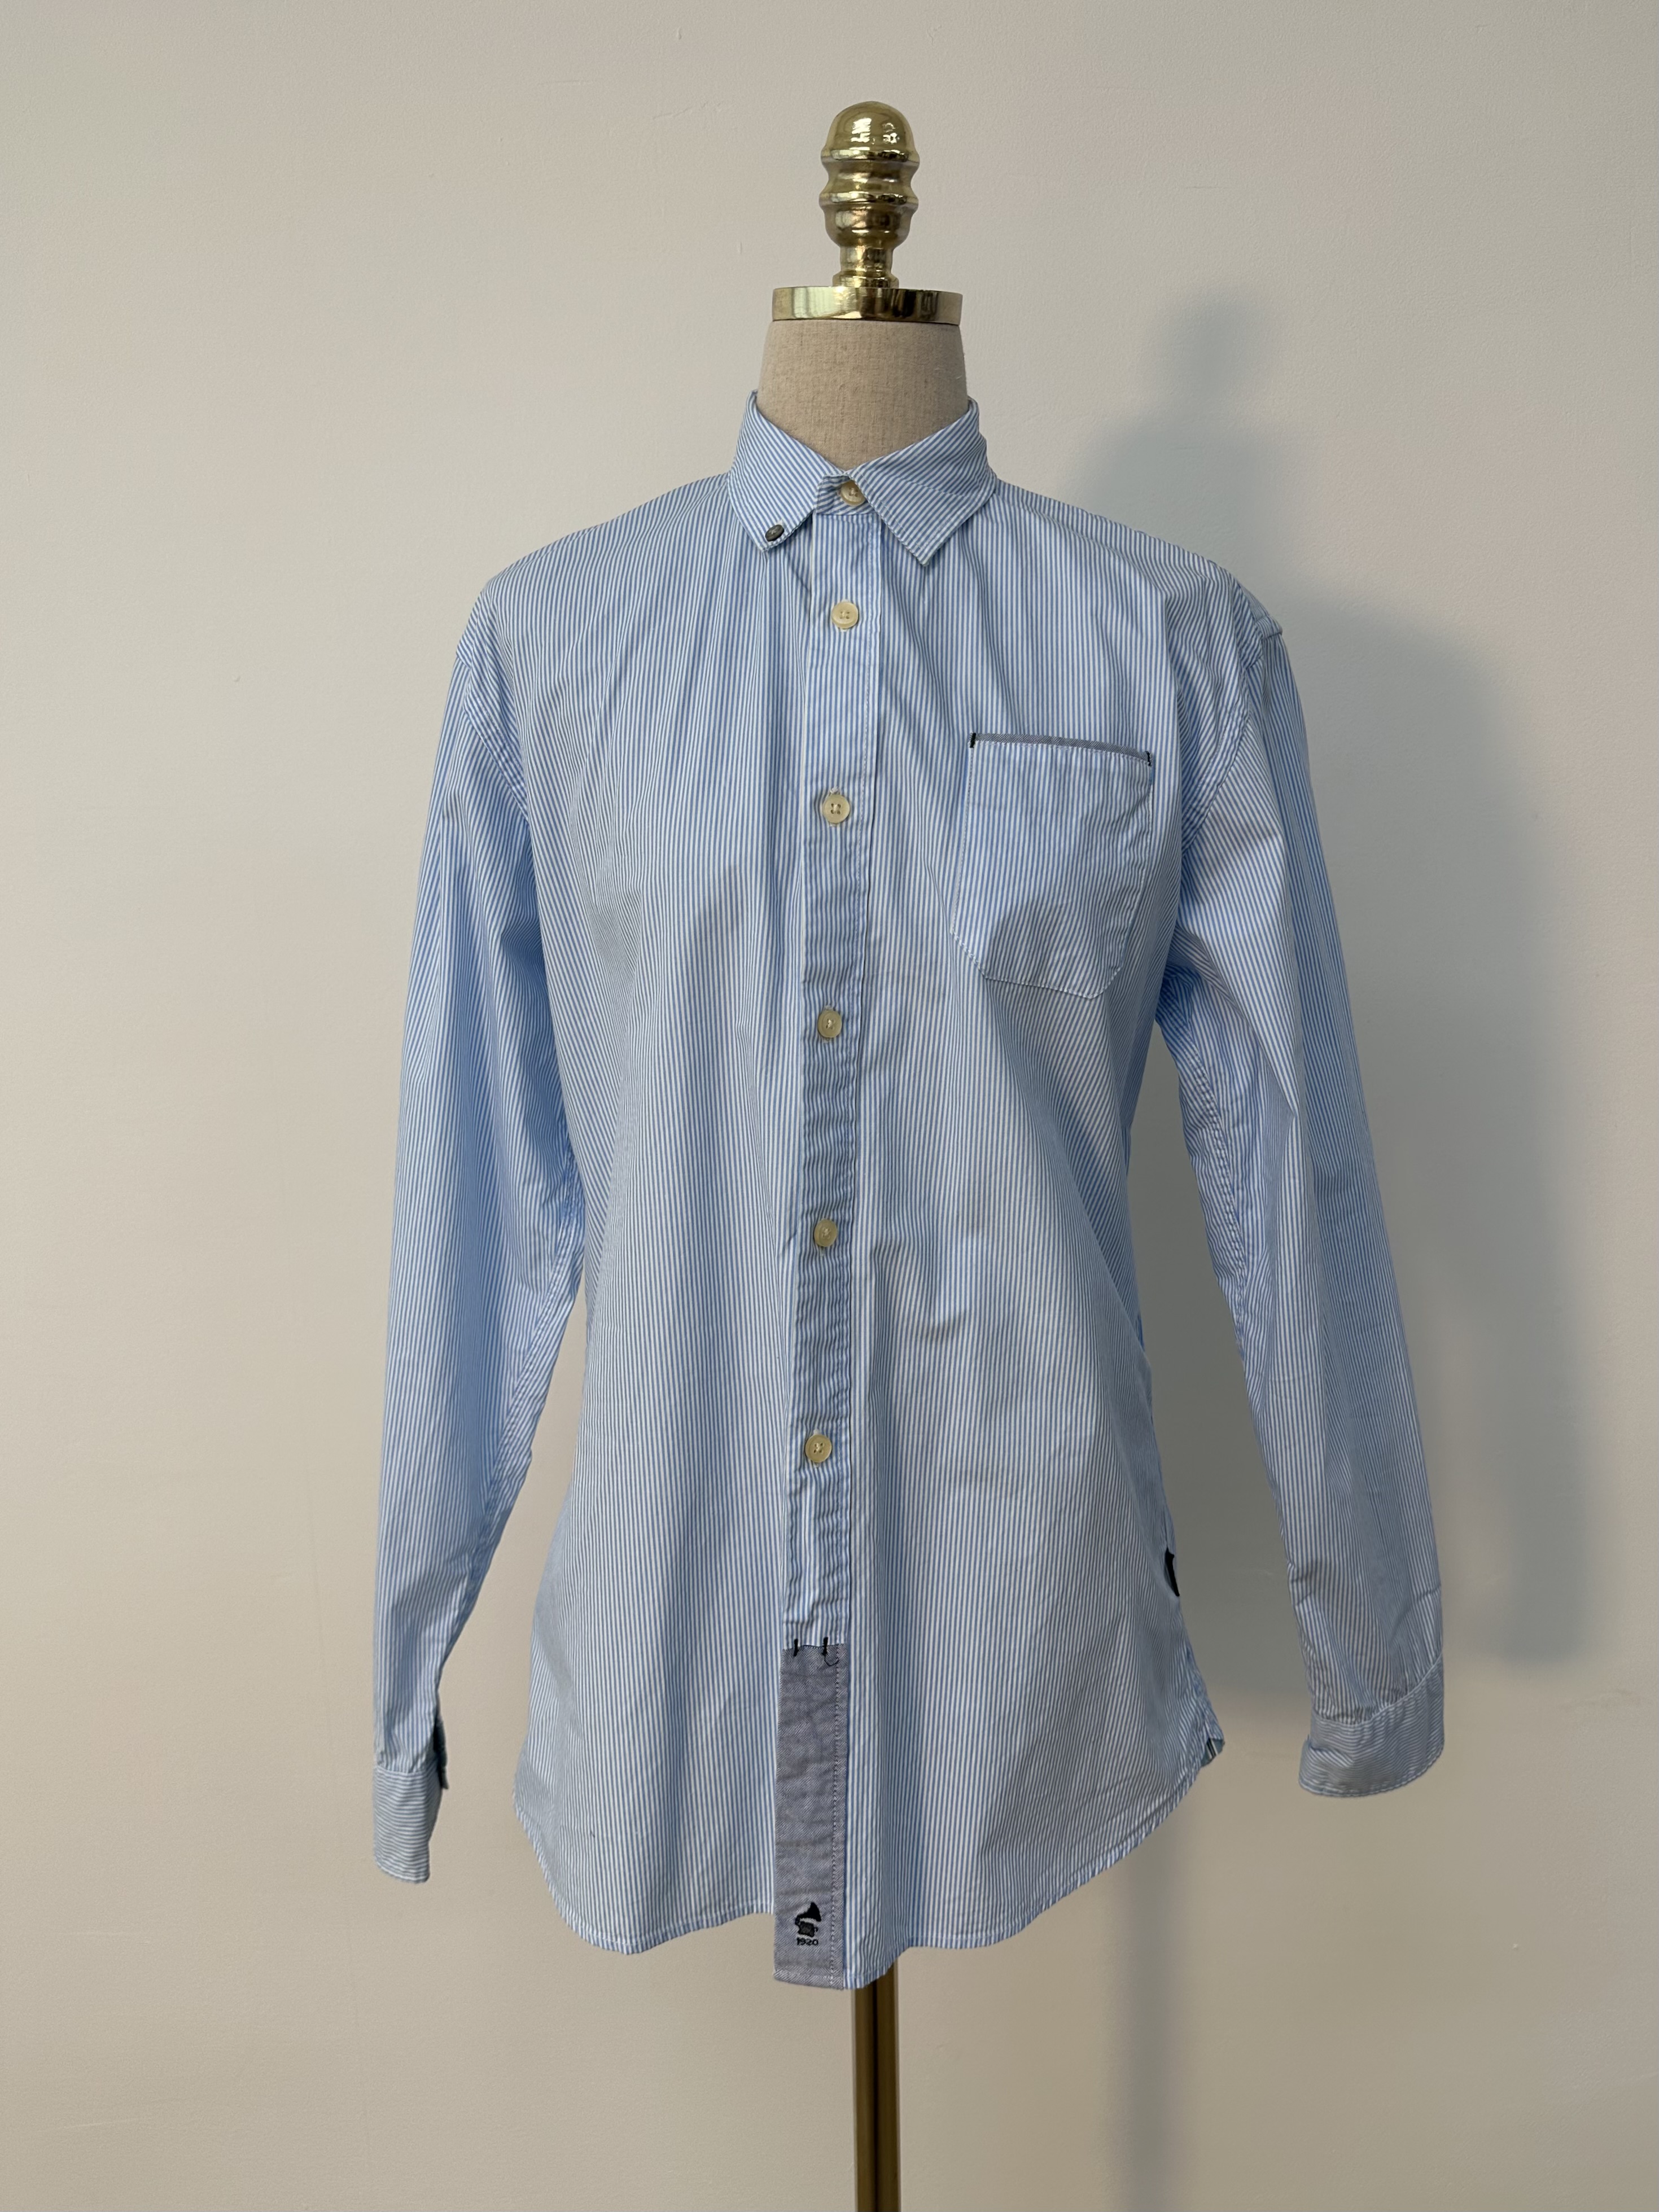 Paul smith jeans blue stripe cotton shirt